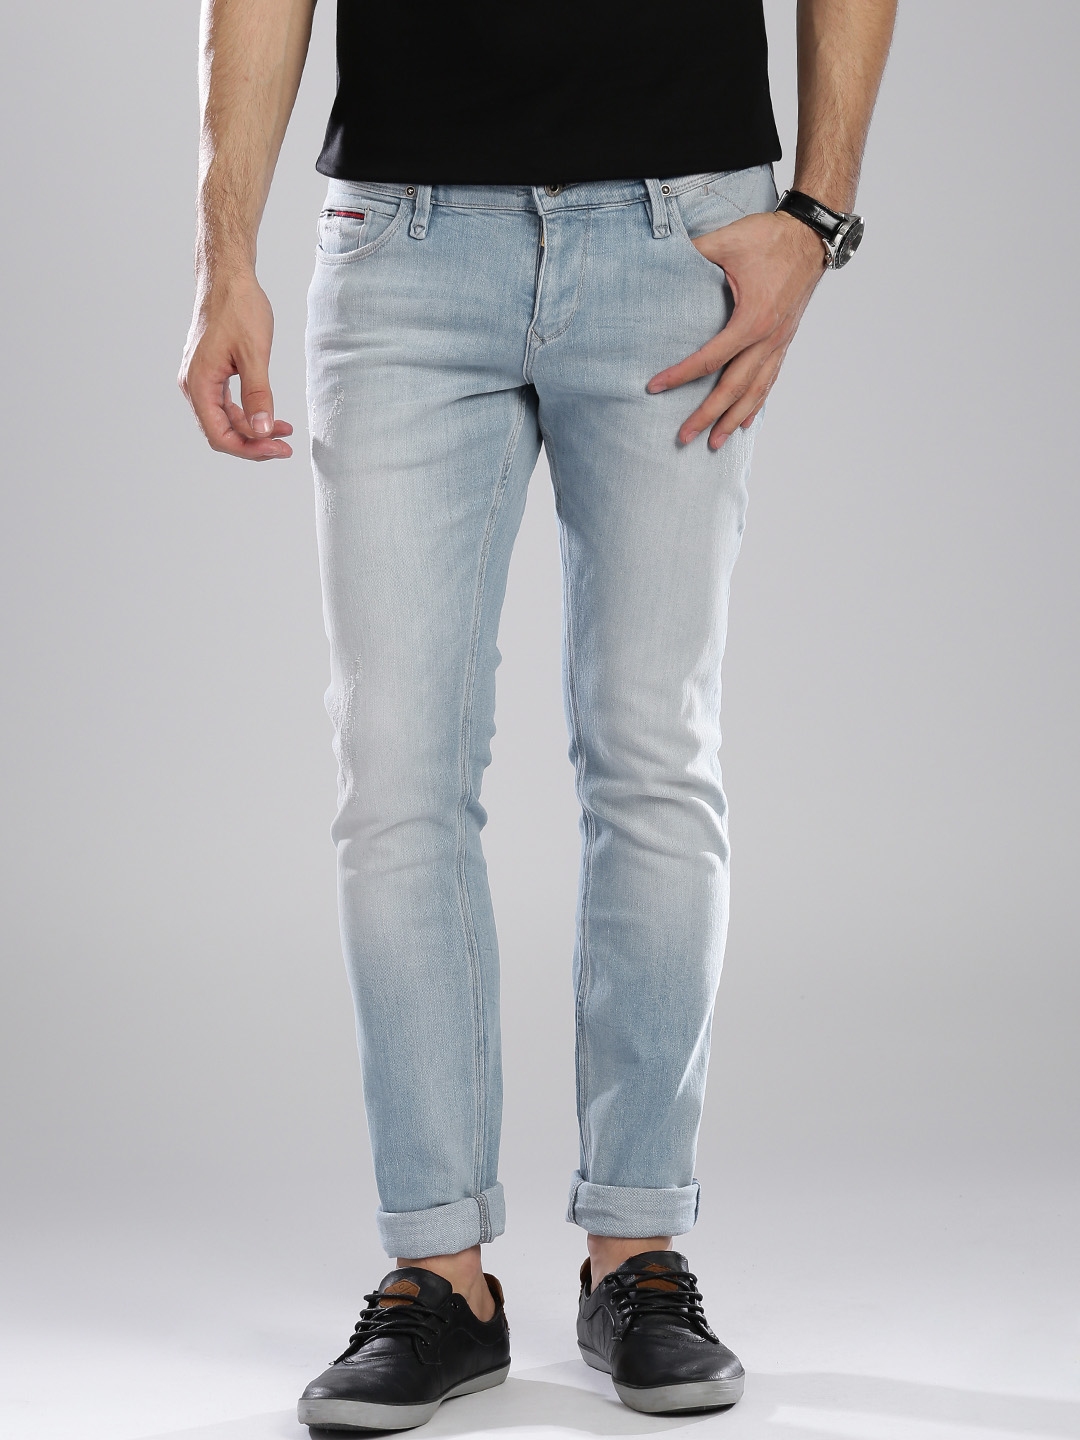 Buy Tommy Hilfiger Light Fit Sidney Stretchable Jeans - Men 1253692 | Myntra